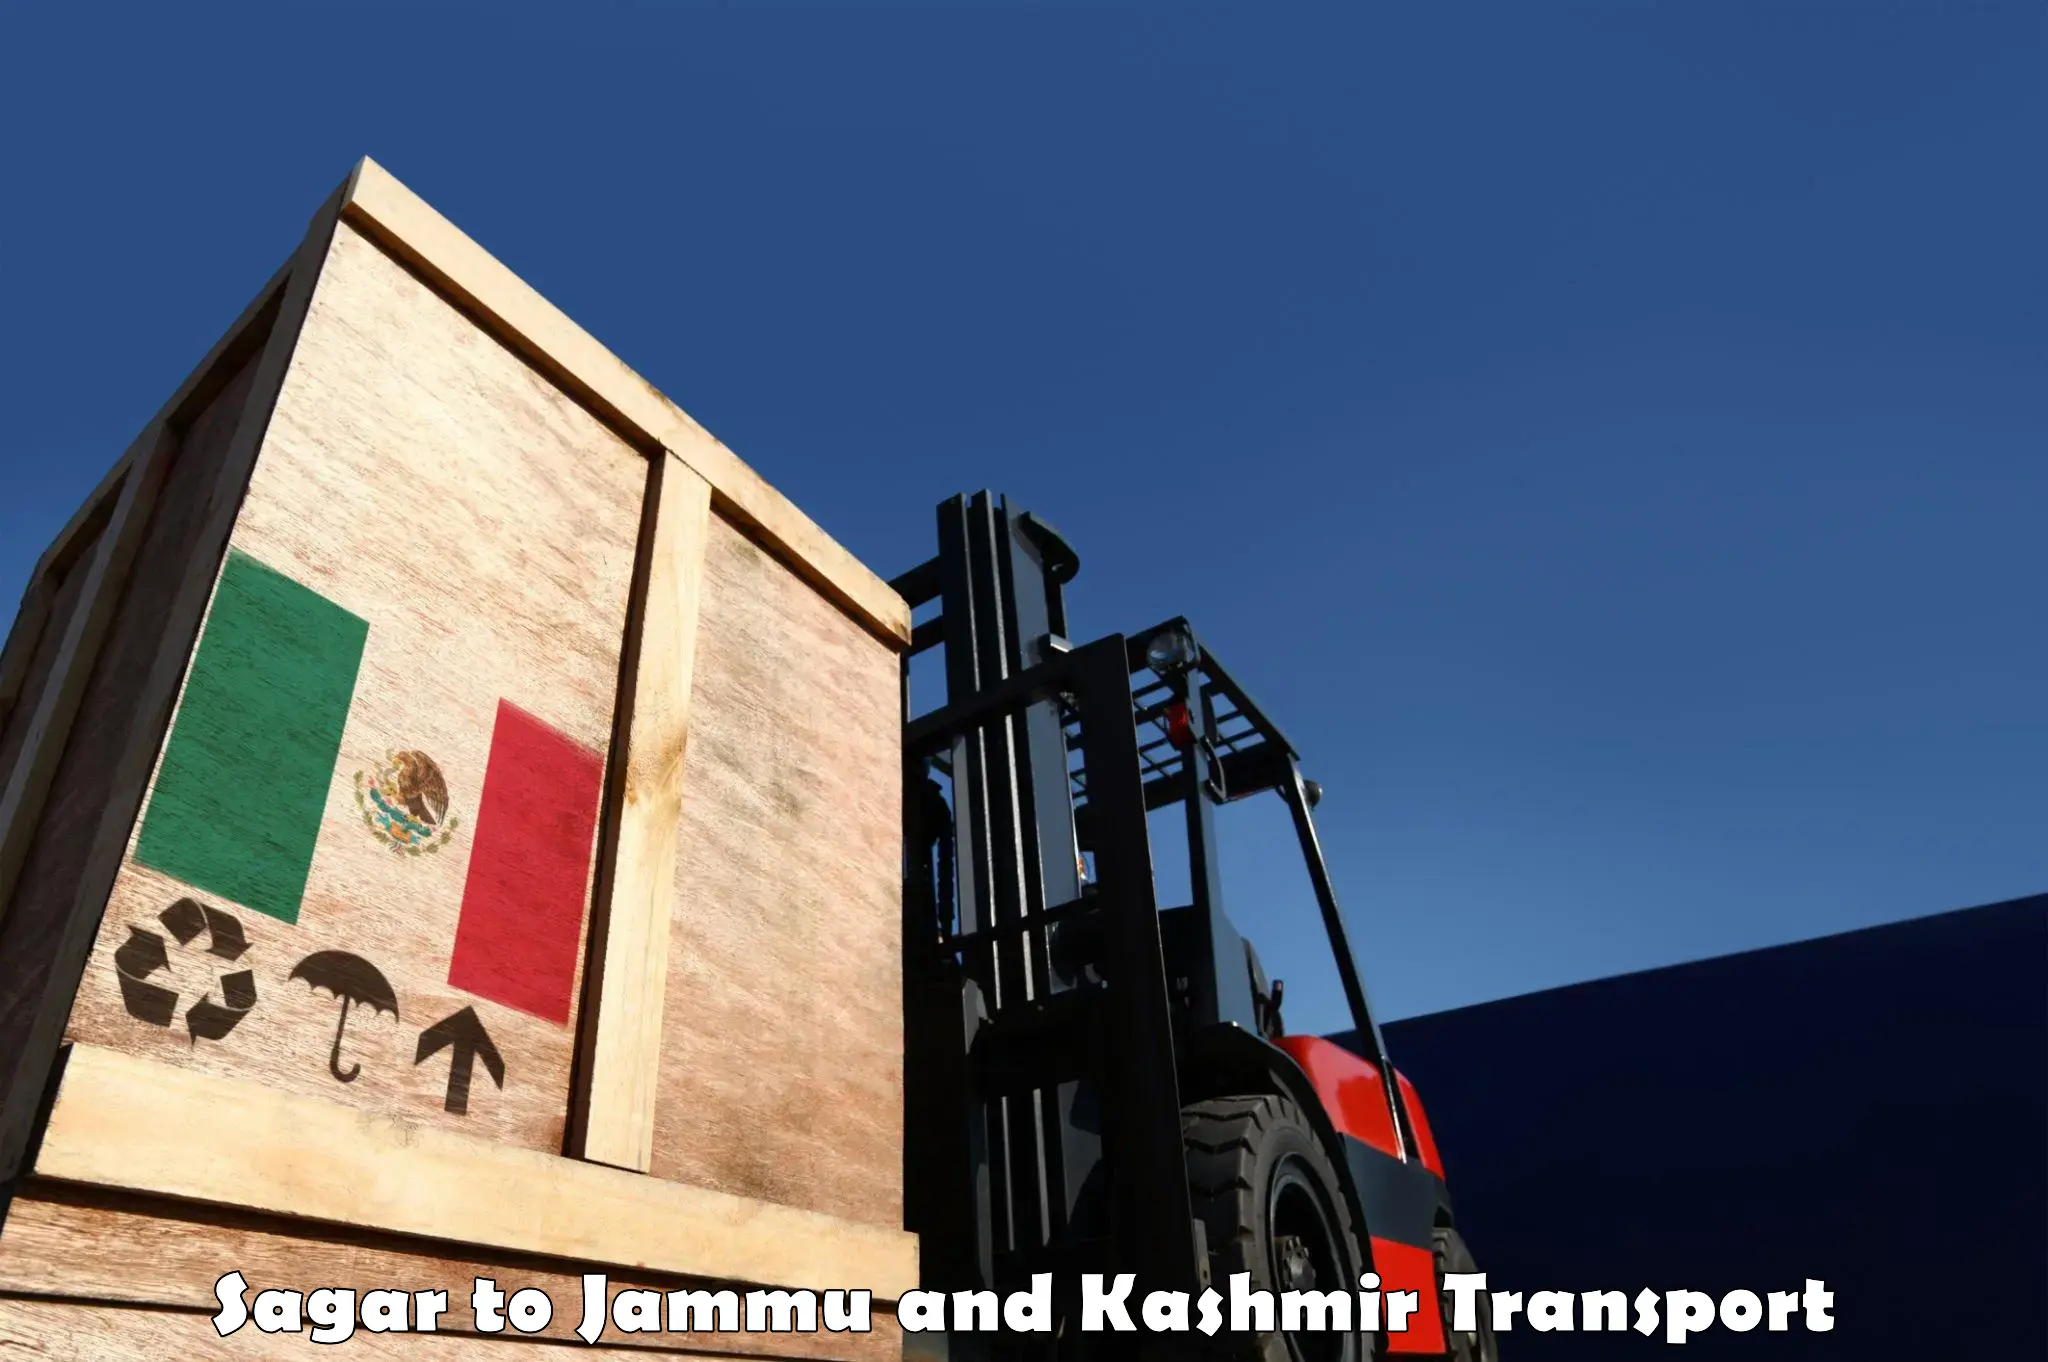 Furniture transport service in Sagar to Srinagar Kashmir